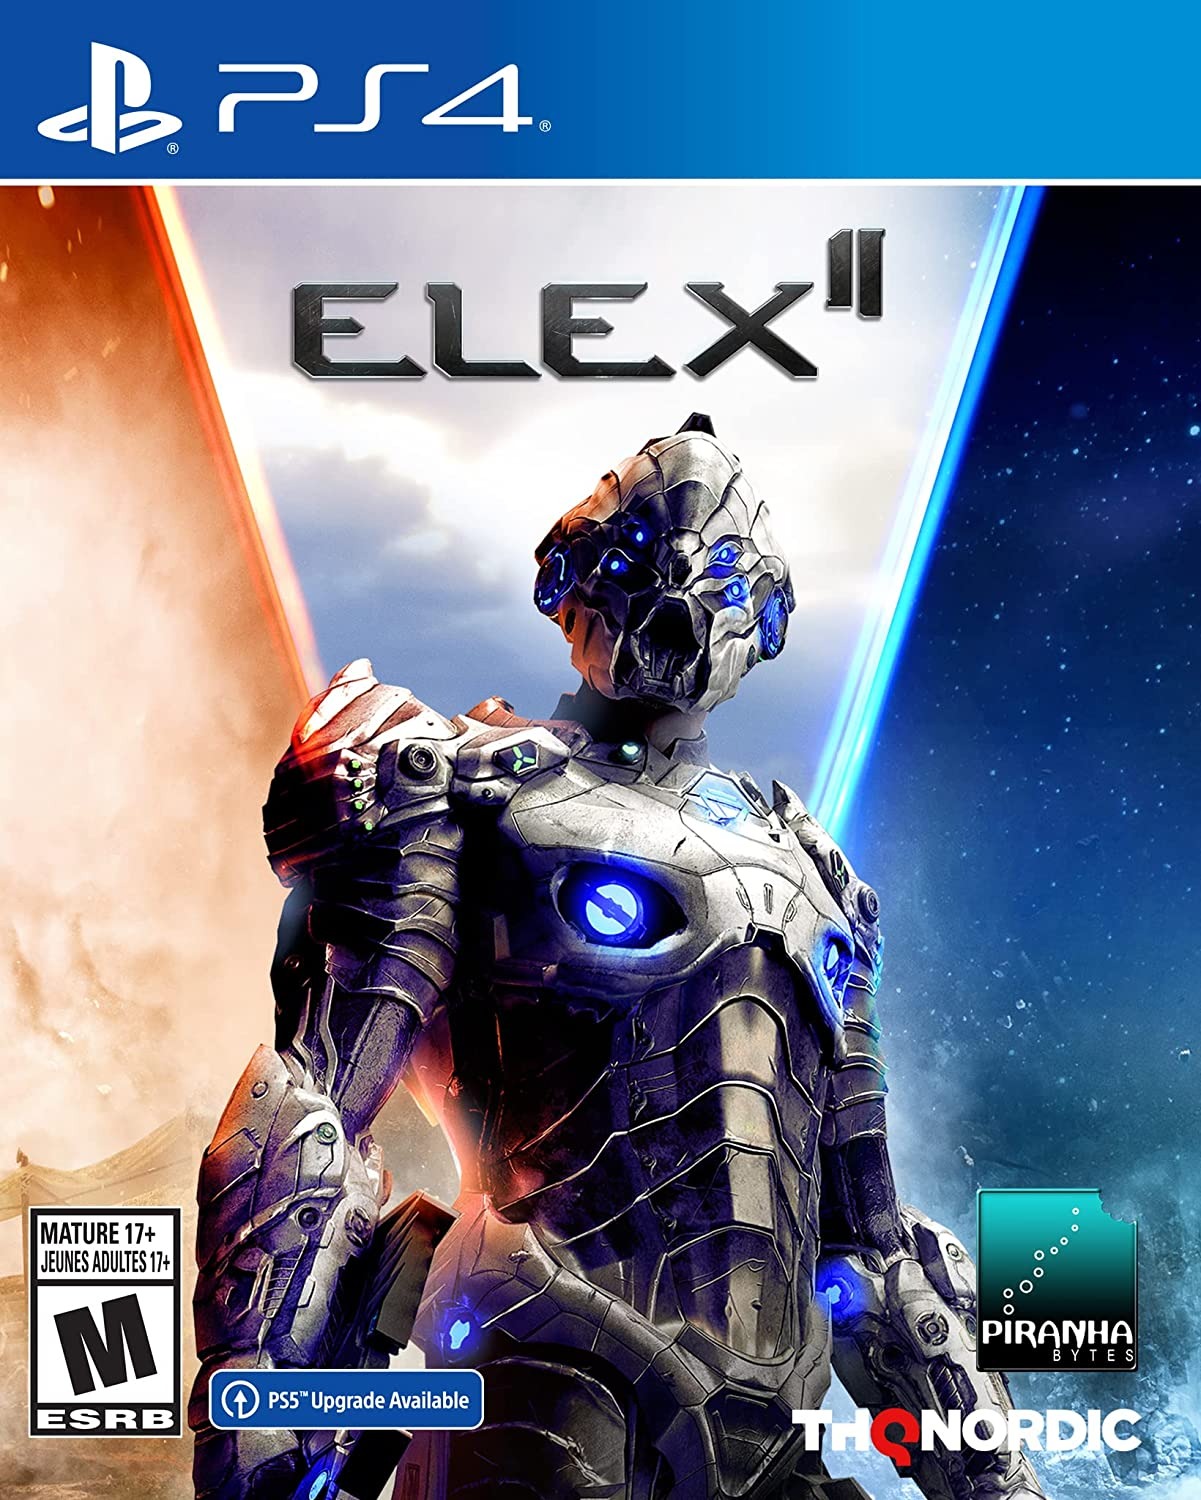 [PS4]《核心元素2 ELEX2》 v1.05 中文版PKG下载 9.00降级5.05